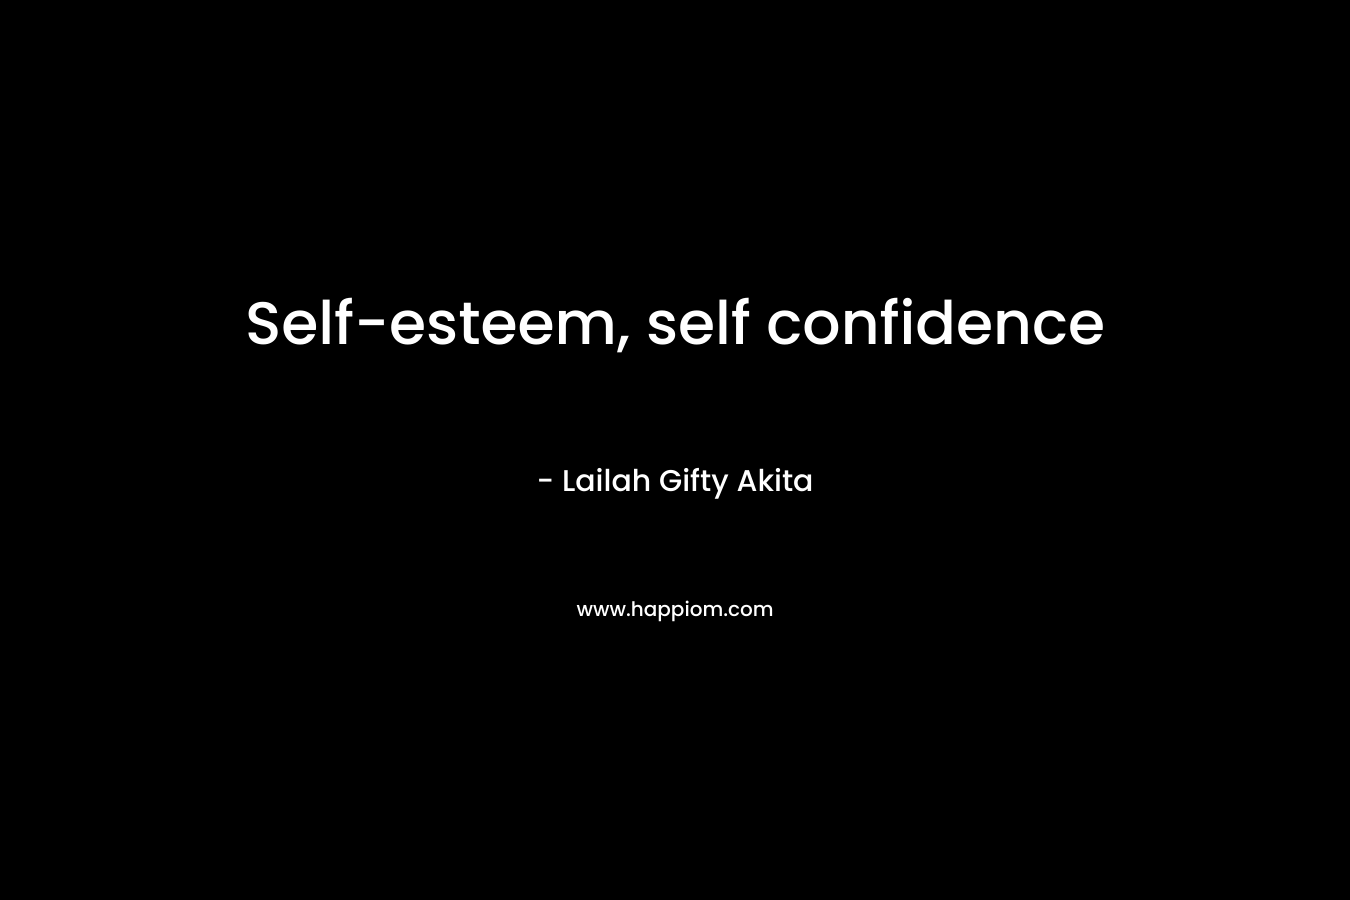 Self-esteem, self confidence